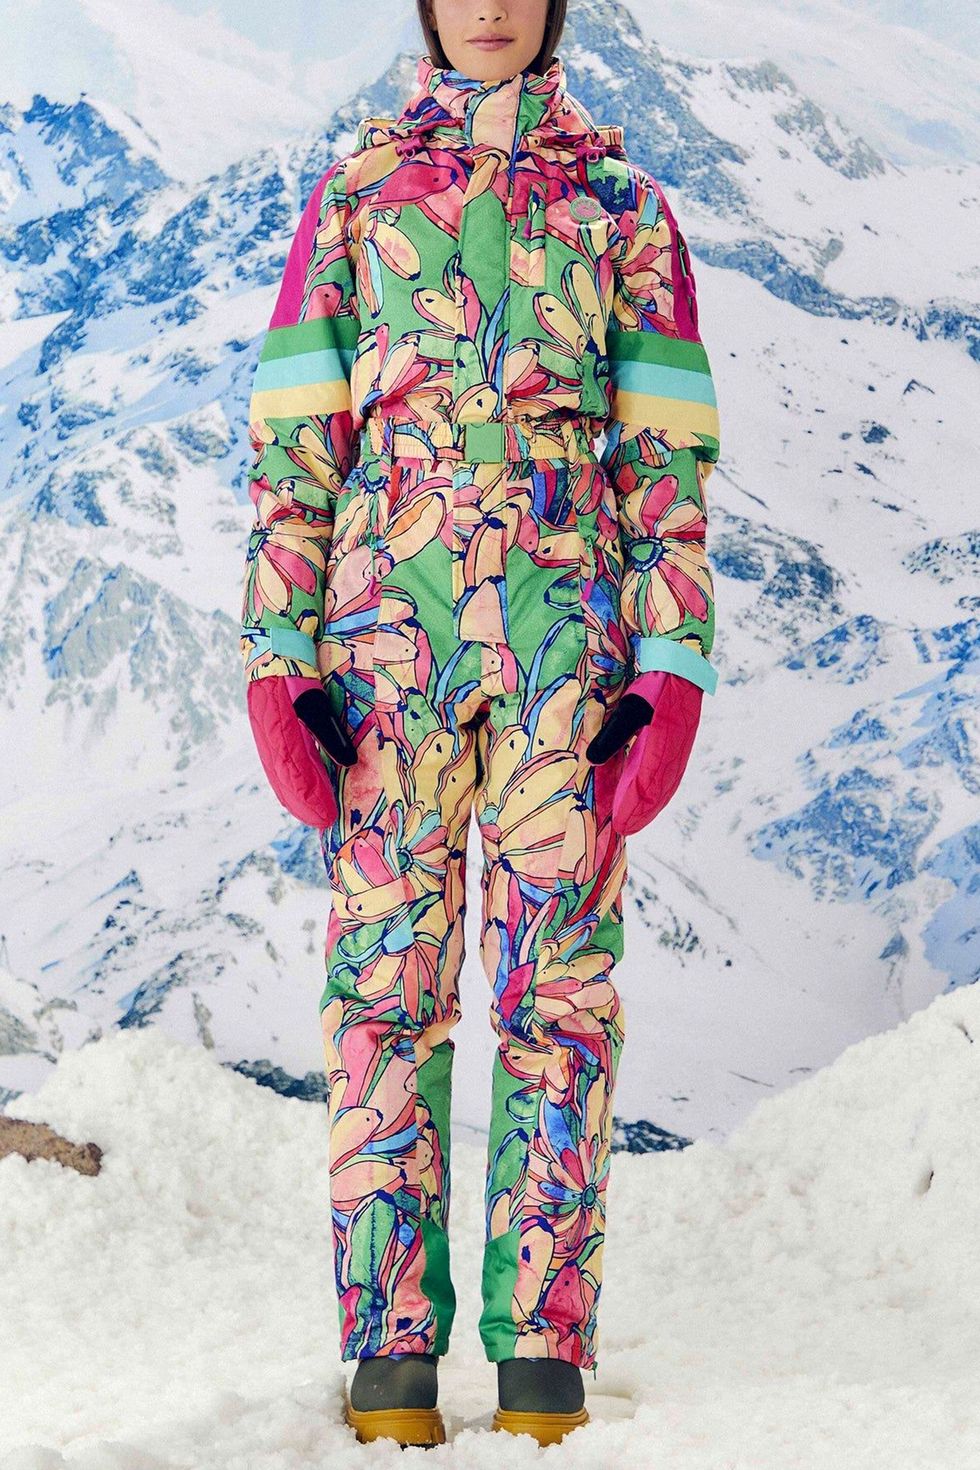 One Piece Ski Suit Womens Snowsuit Ski Suit for Women Warm